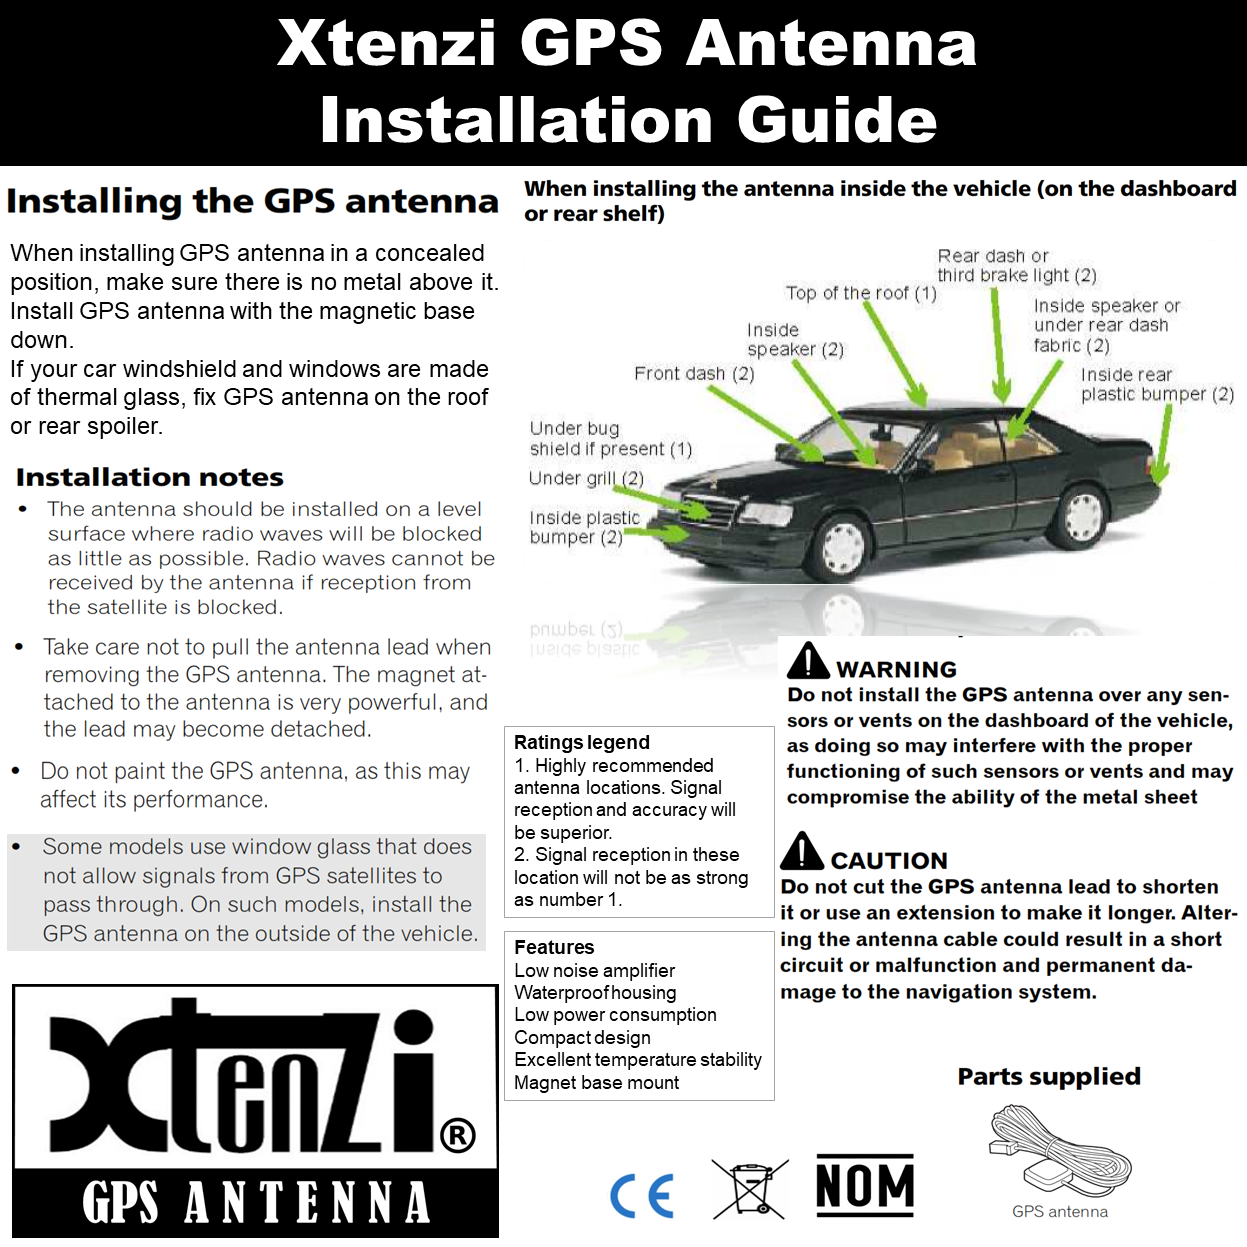 Xtenzi GPS Antenna XT91850-L3 for KenwoodDNX5120 DNX5140 DNX7120 DNX8120 DNX9140